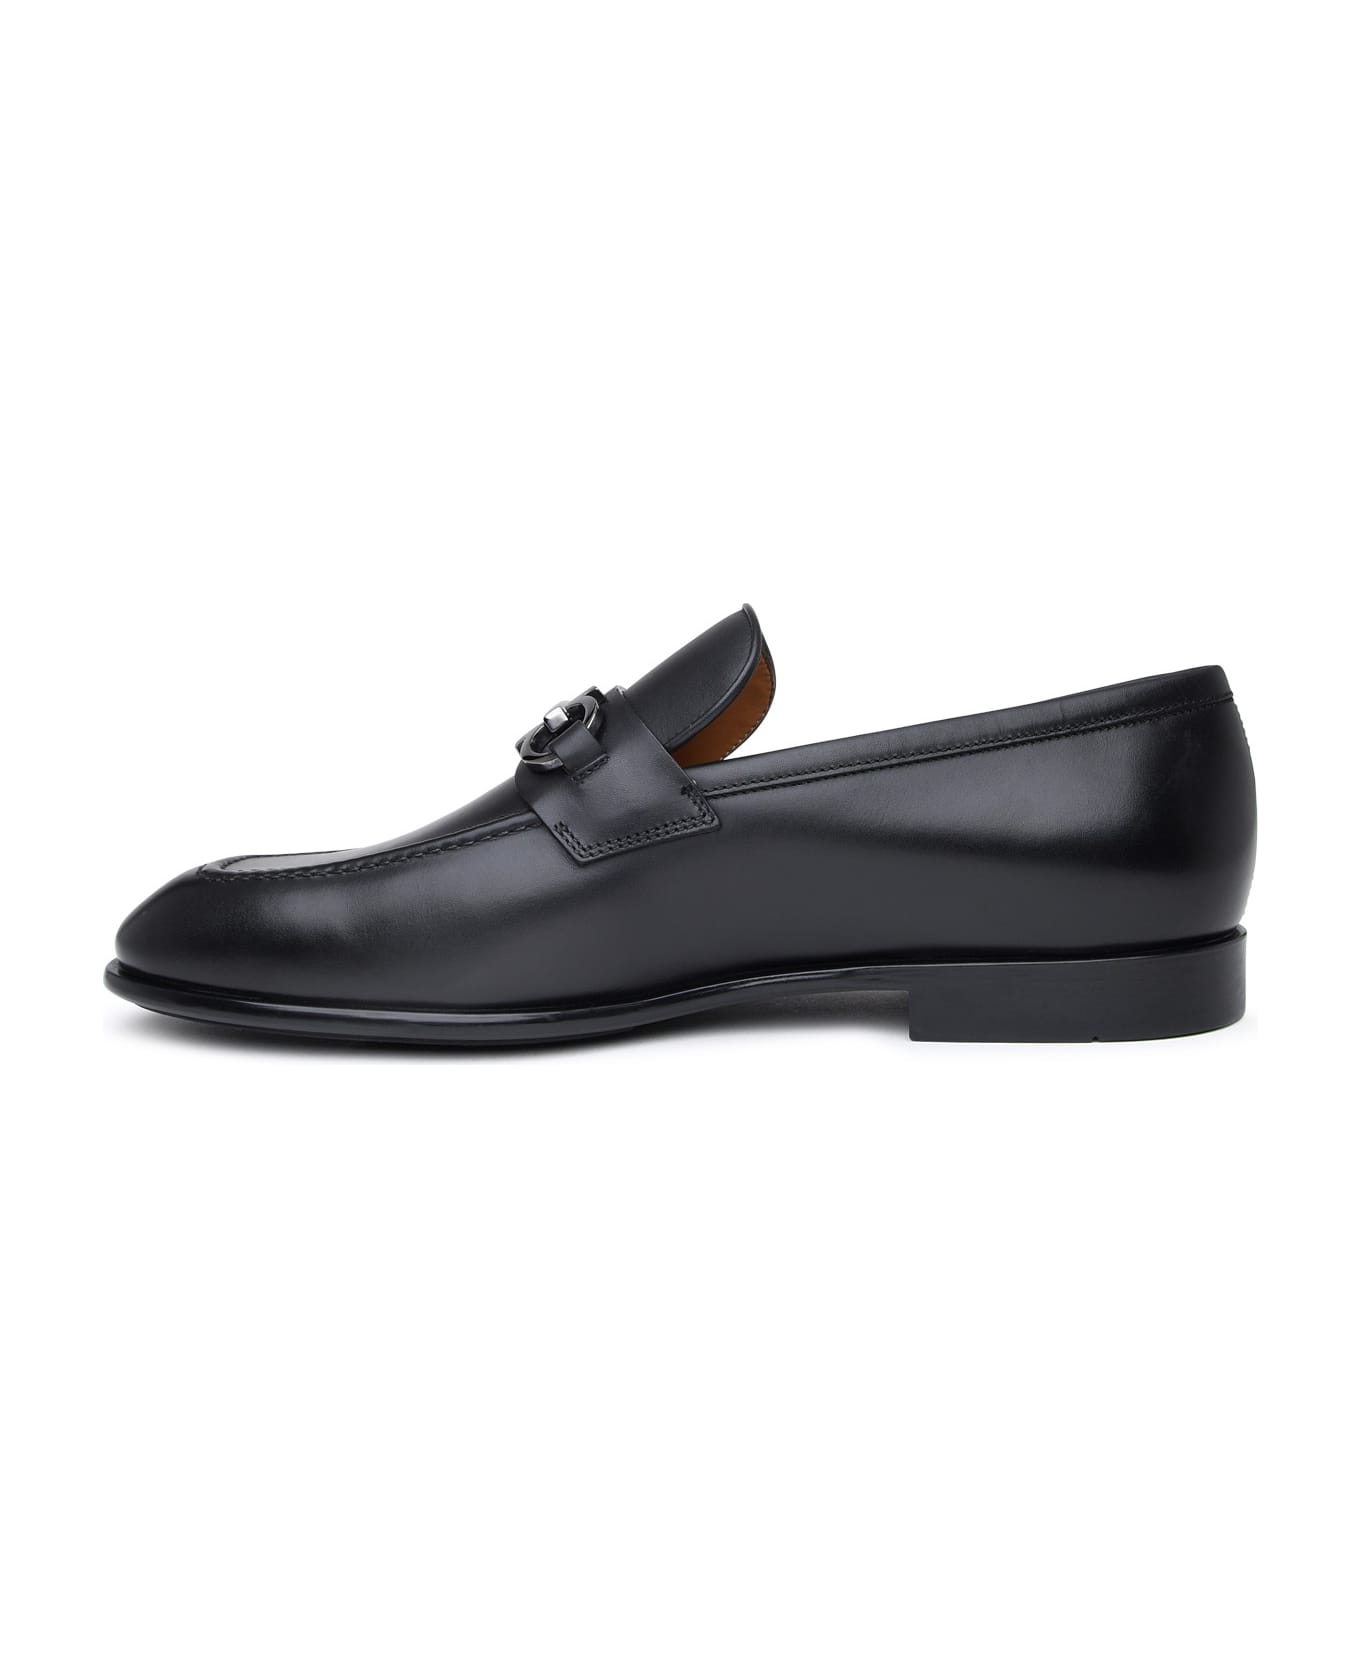 Ferragamo Black Leather Loafers - Black